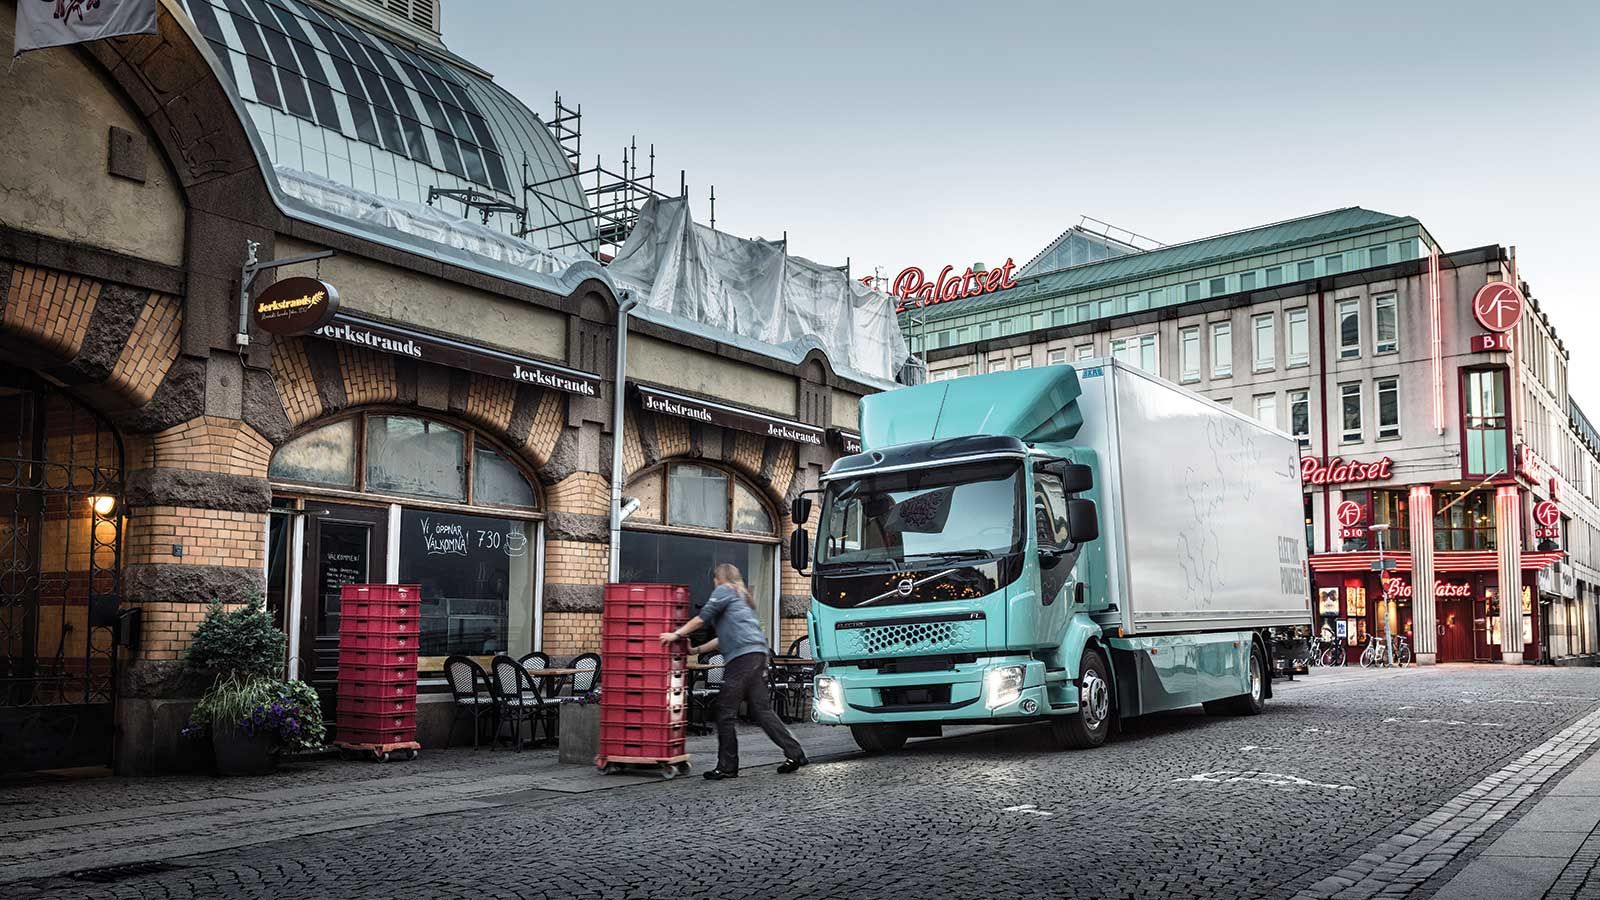 Η νέα πρόταση της Volvo Trucks στα ηλεκτροκίνητα φορτηγά αστικών διανομών, εφοδιάζεται με έναν ηλεκτροκινητήρα ισχύος 185 kW, με 425 Nm ροπής αντίστοιχα.